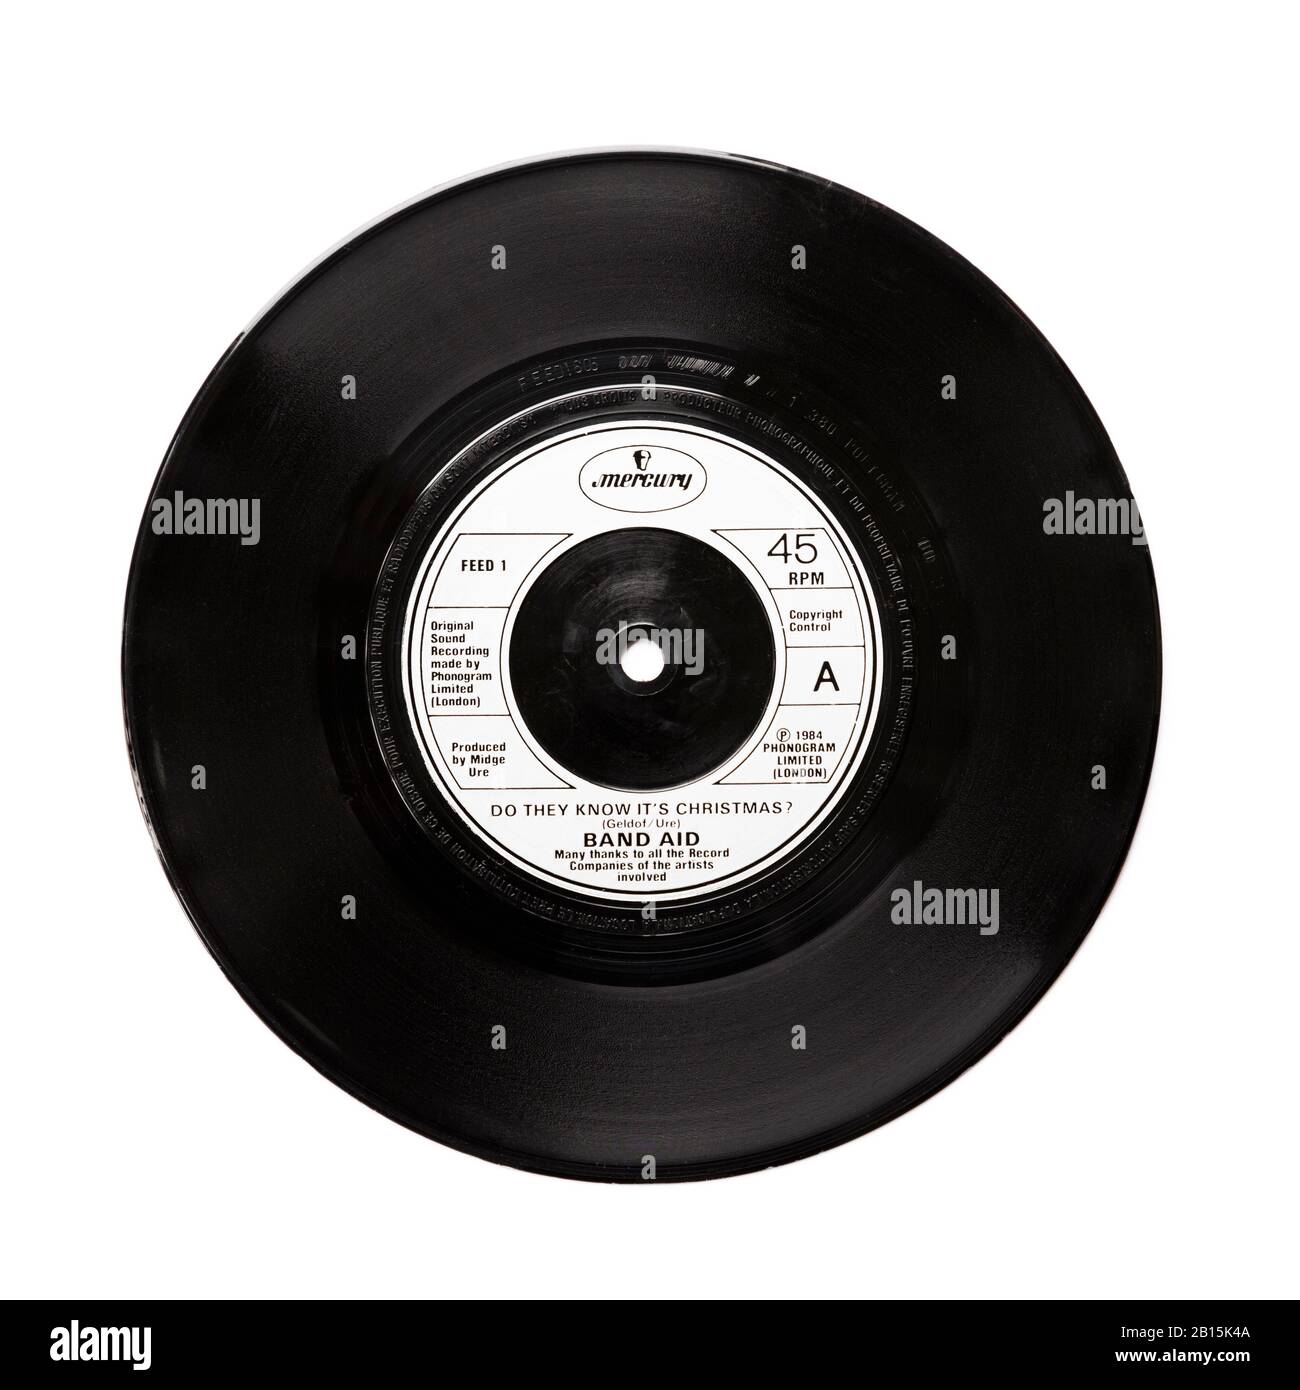 Antiguo original Phonogram Ltd vinilo 45 RPM disco ¿Saben que es Navidad por Band Aid 1984 aislado en blanco. Geldof y Ure Foto de stock